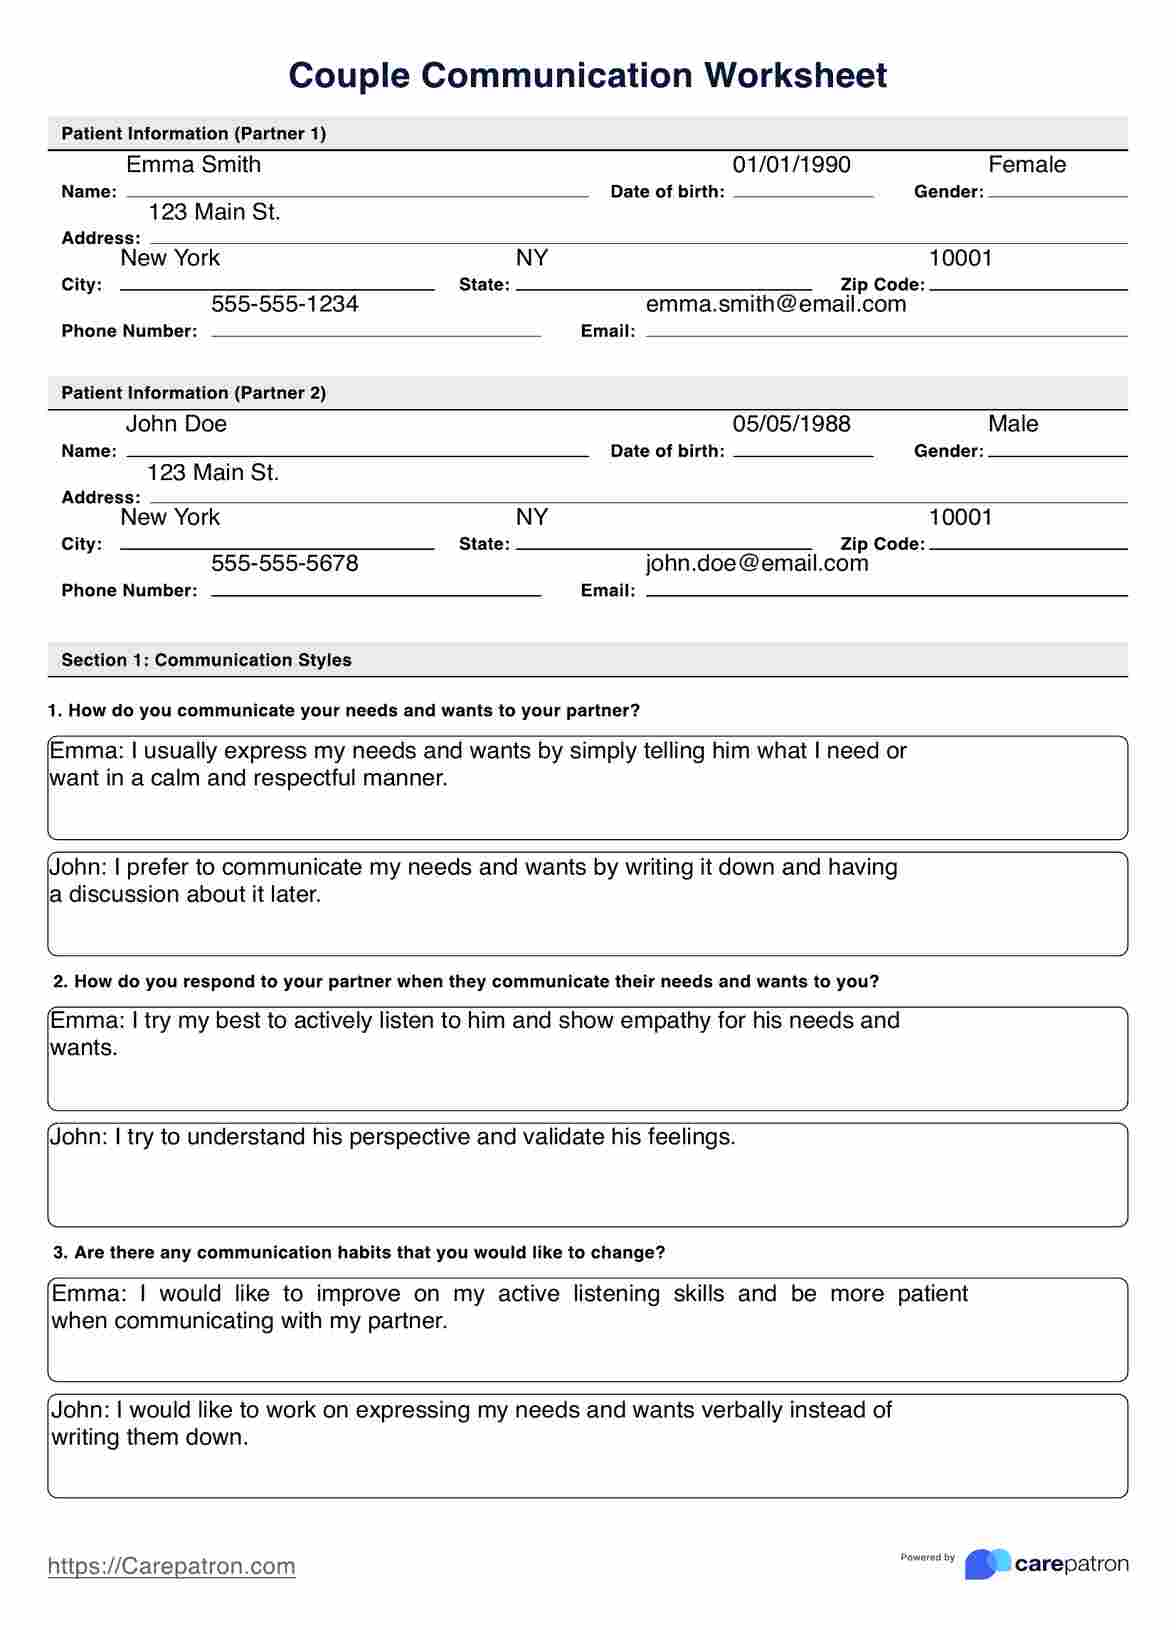 Couple Communication Worksheet PDF Example